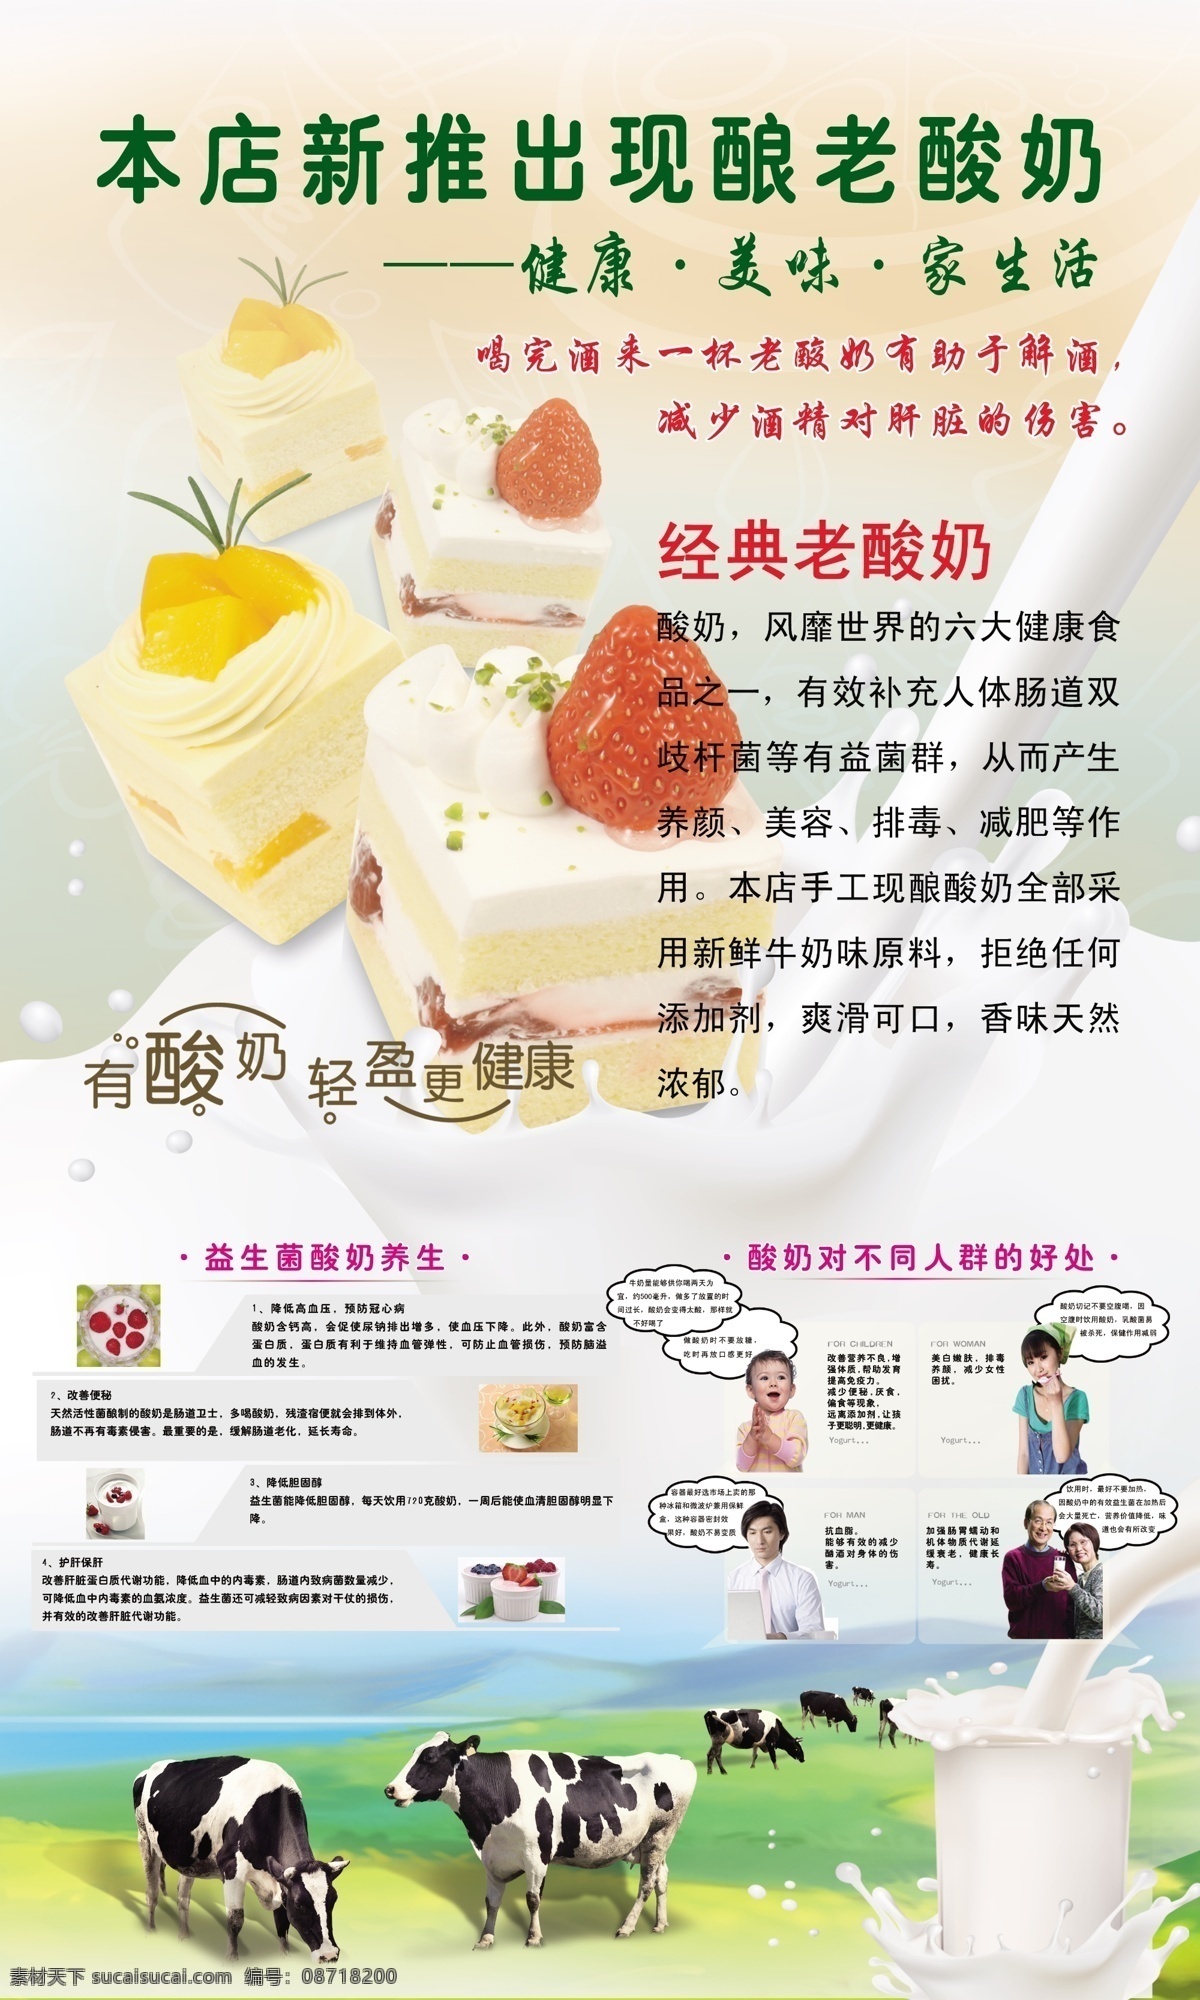 鲜奶 蛋糕 冷饮 奶牛 牛奶 酸奶 酸奶海报 鲜奶广告 饮品 展架 展板 海报 宣传海报 宣传单 彩页 dm